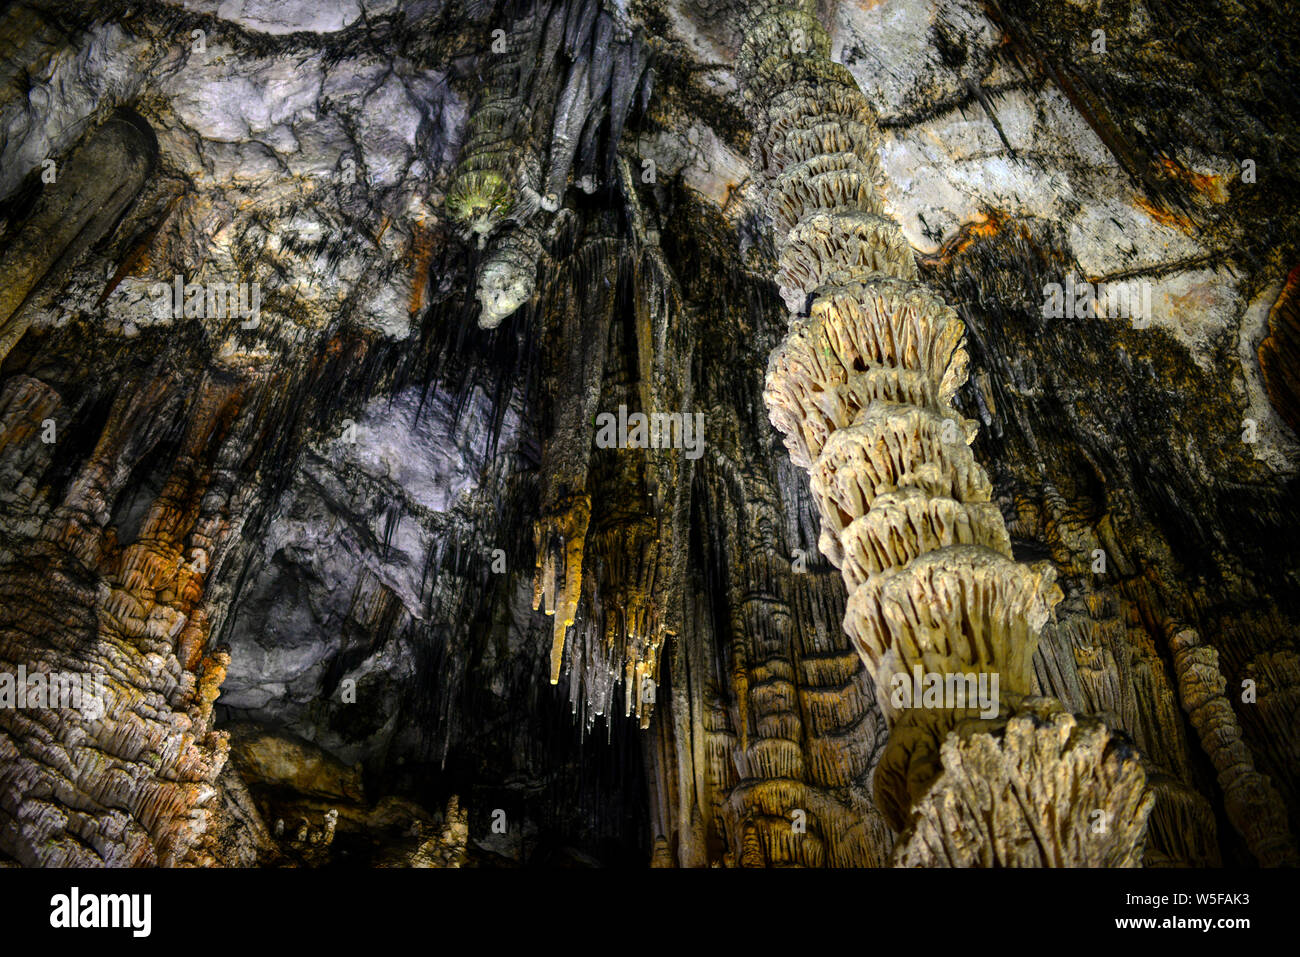 Grottes d'Artà (Coves d'Artà) dans la municipalité de Capdepera, dans le nord-est de l'île de Majorque, Espagne Banque D'Images